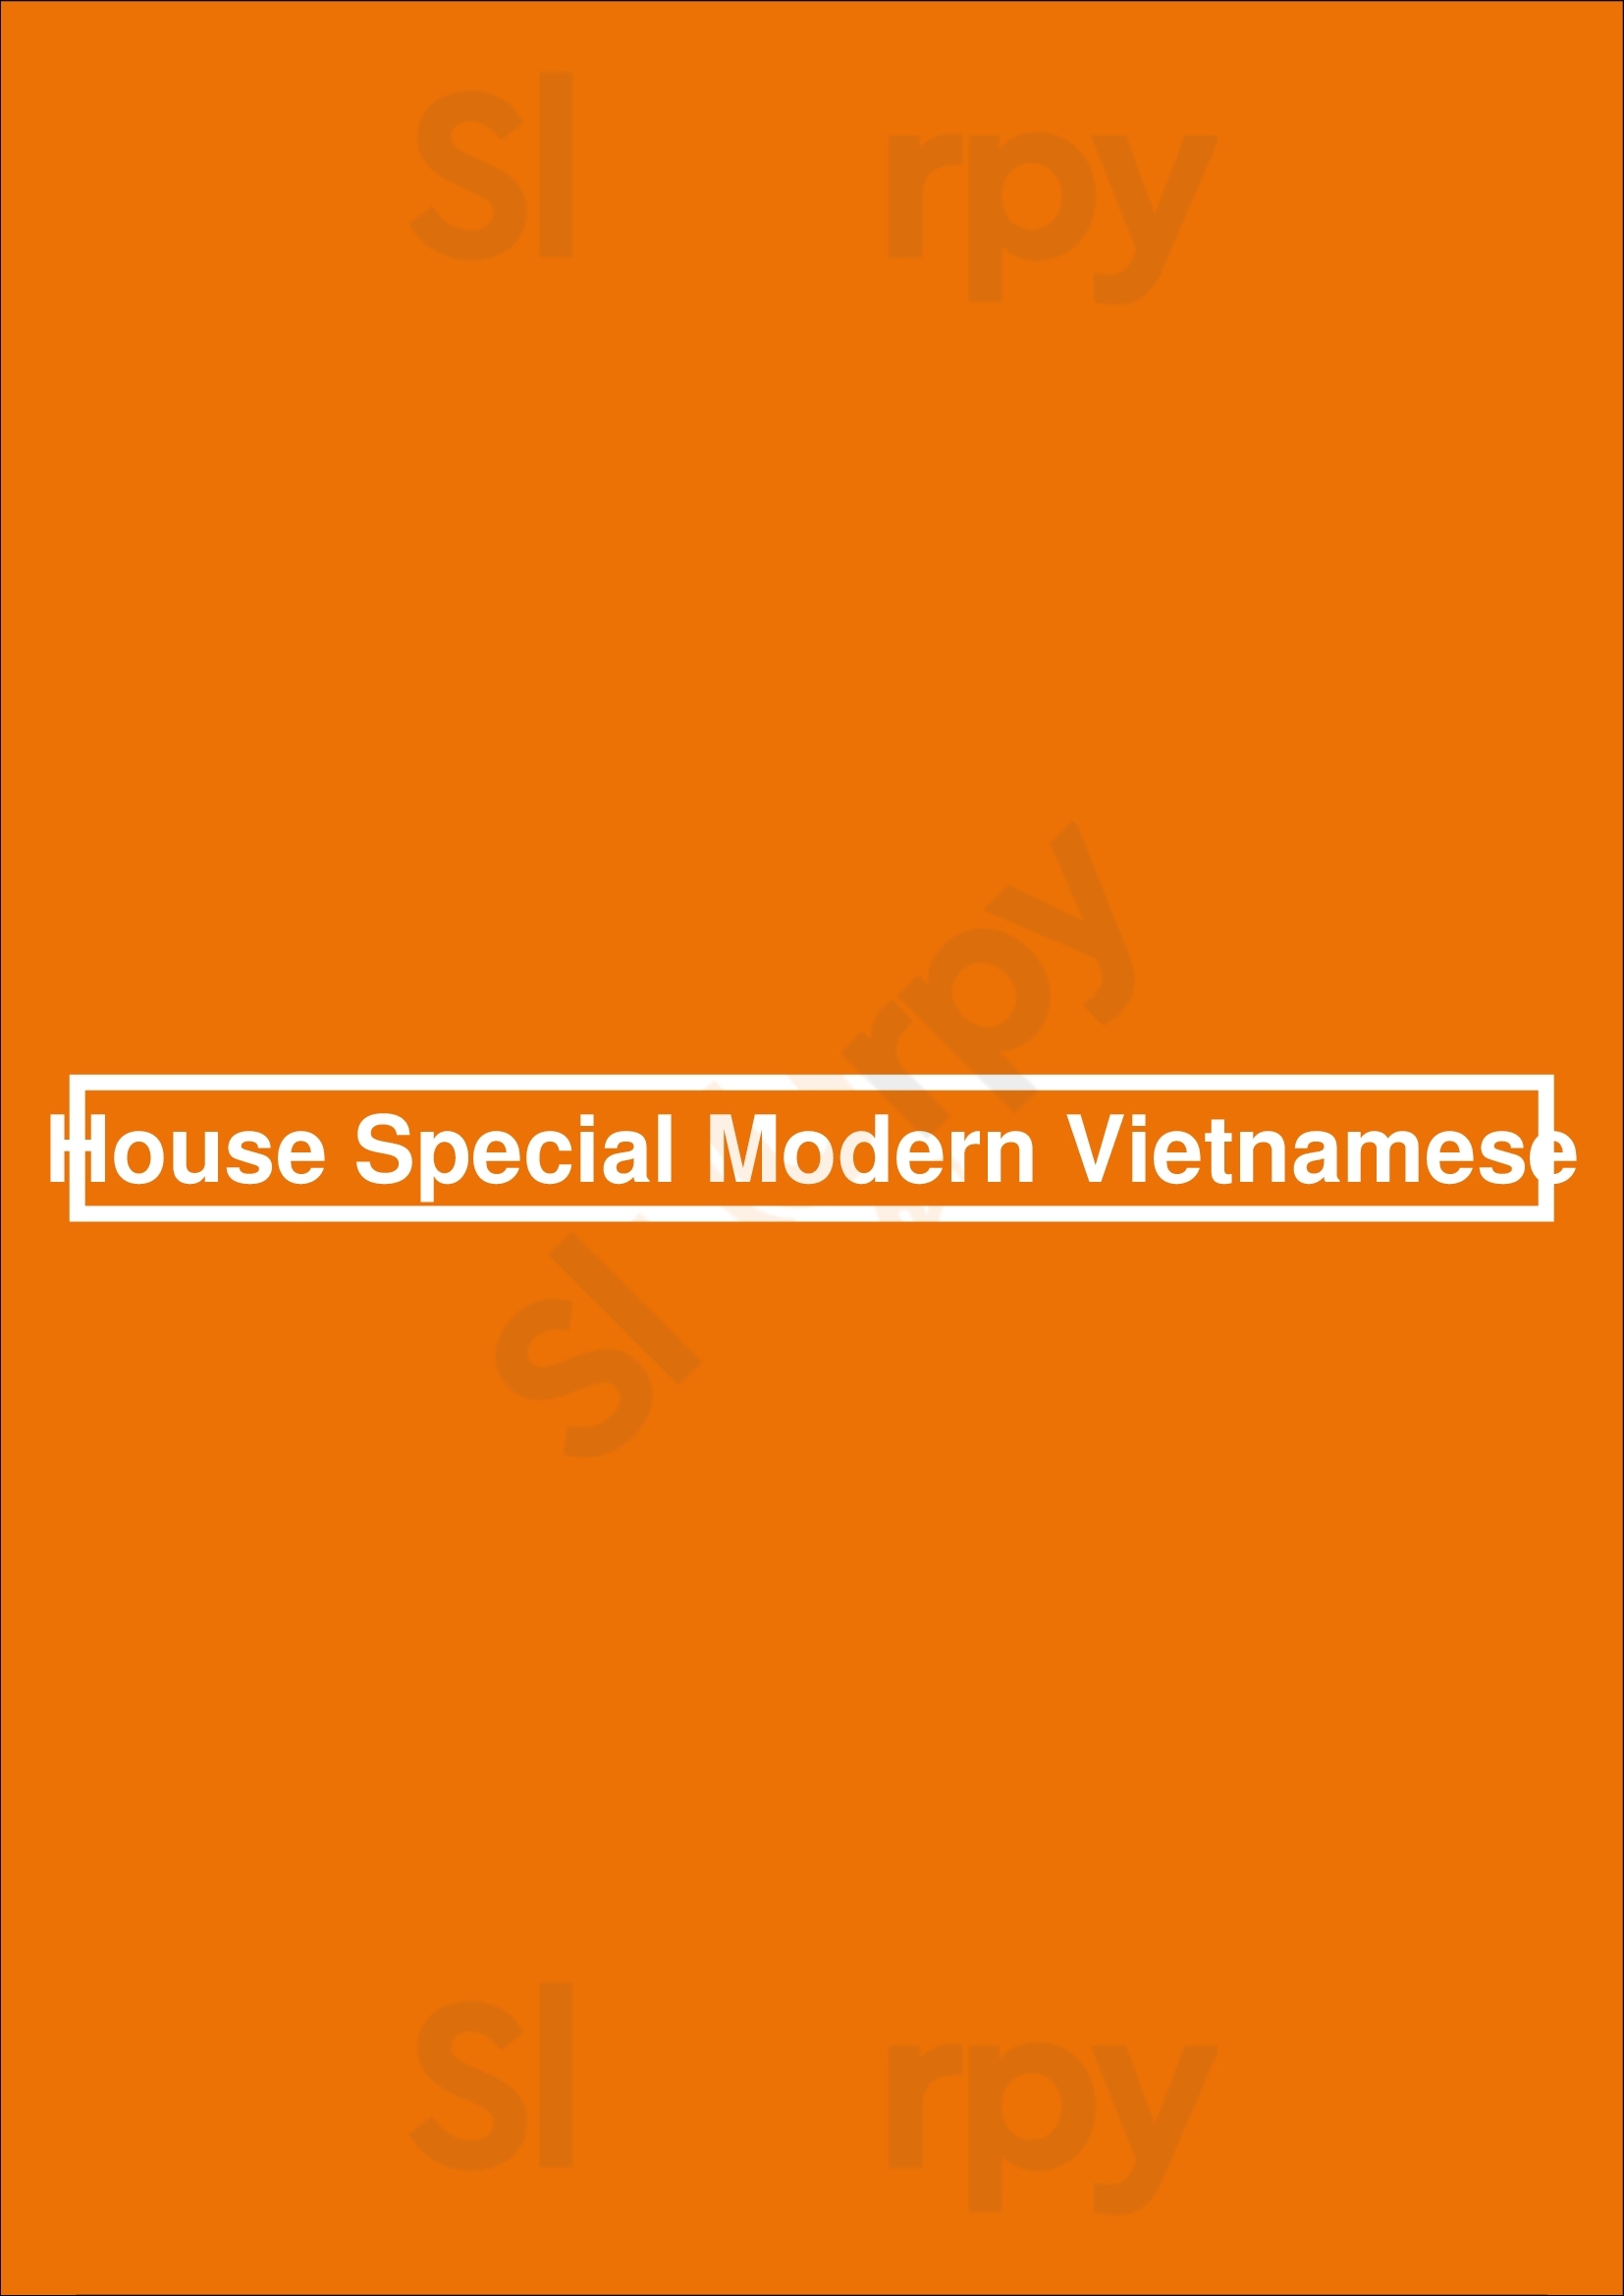 House Special Modern Vietnamese Vancouver Menu - 1